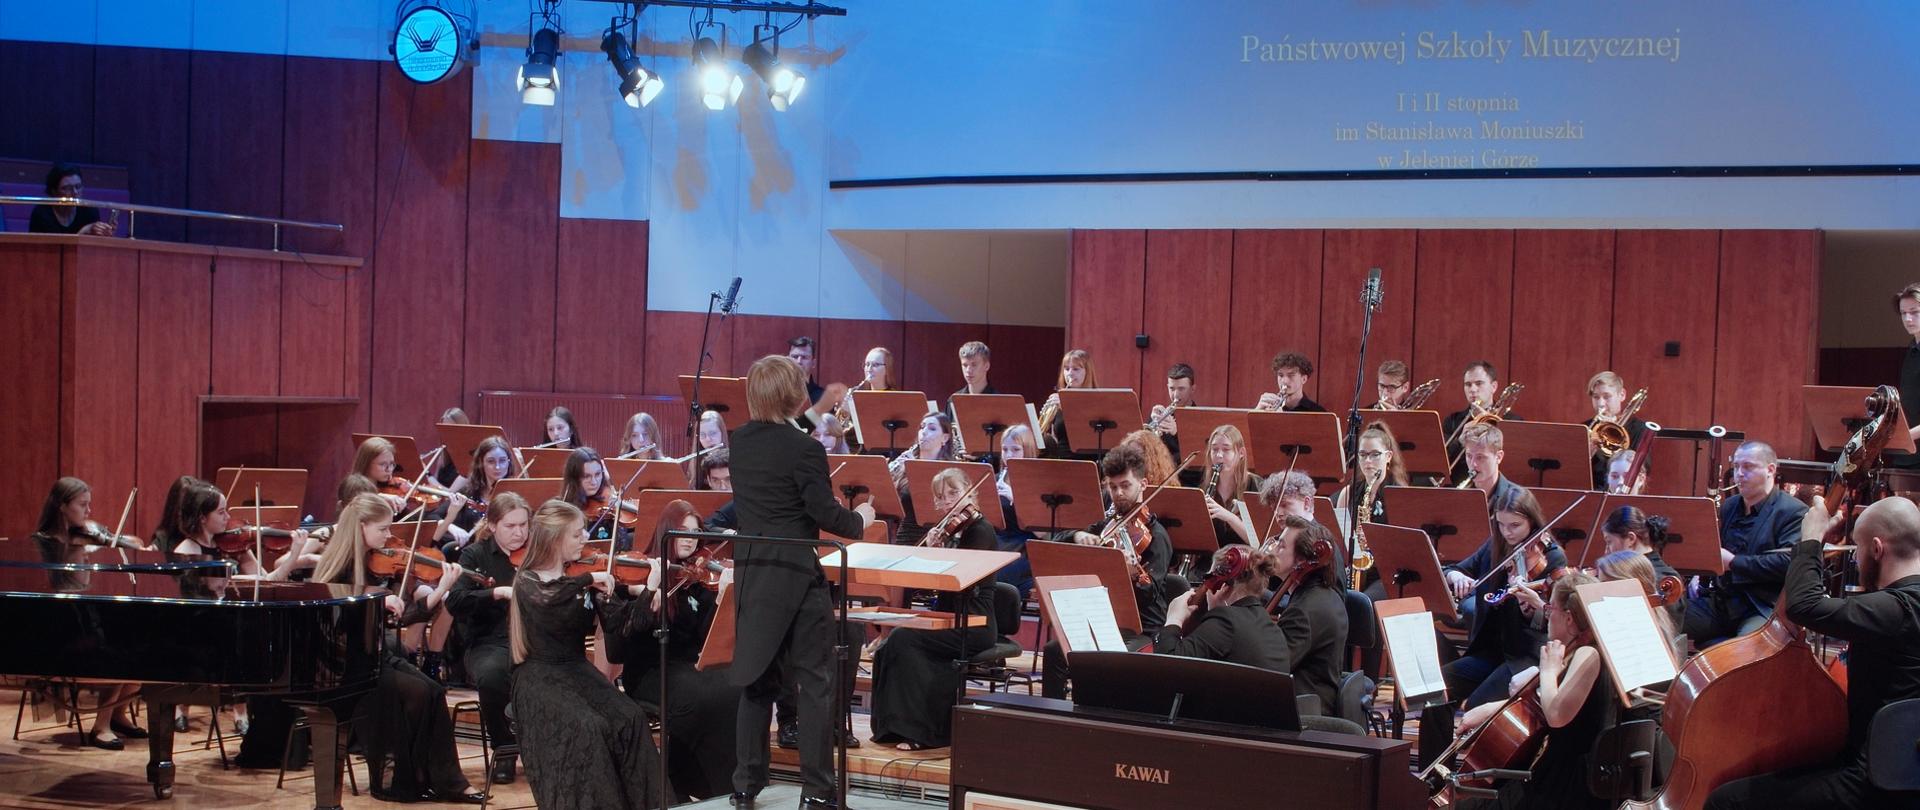 Zdjęcie przedstawiające kadr z koncertu, w filharmonii dolnośląskiej, szkolnej orkiestry symfonicznej PSM II stopnia. Na zdjęciu widoczny cały skład orkiestry wraz z dyrygentem